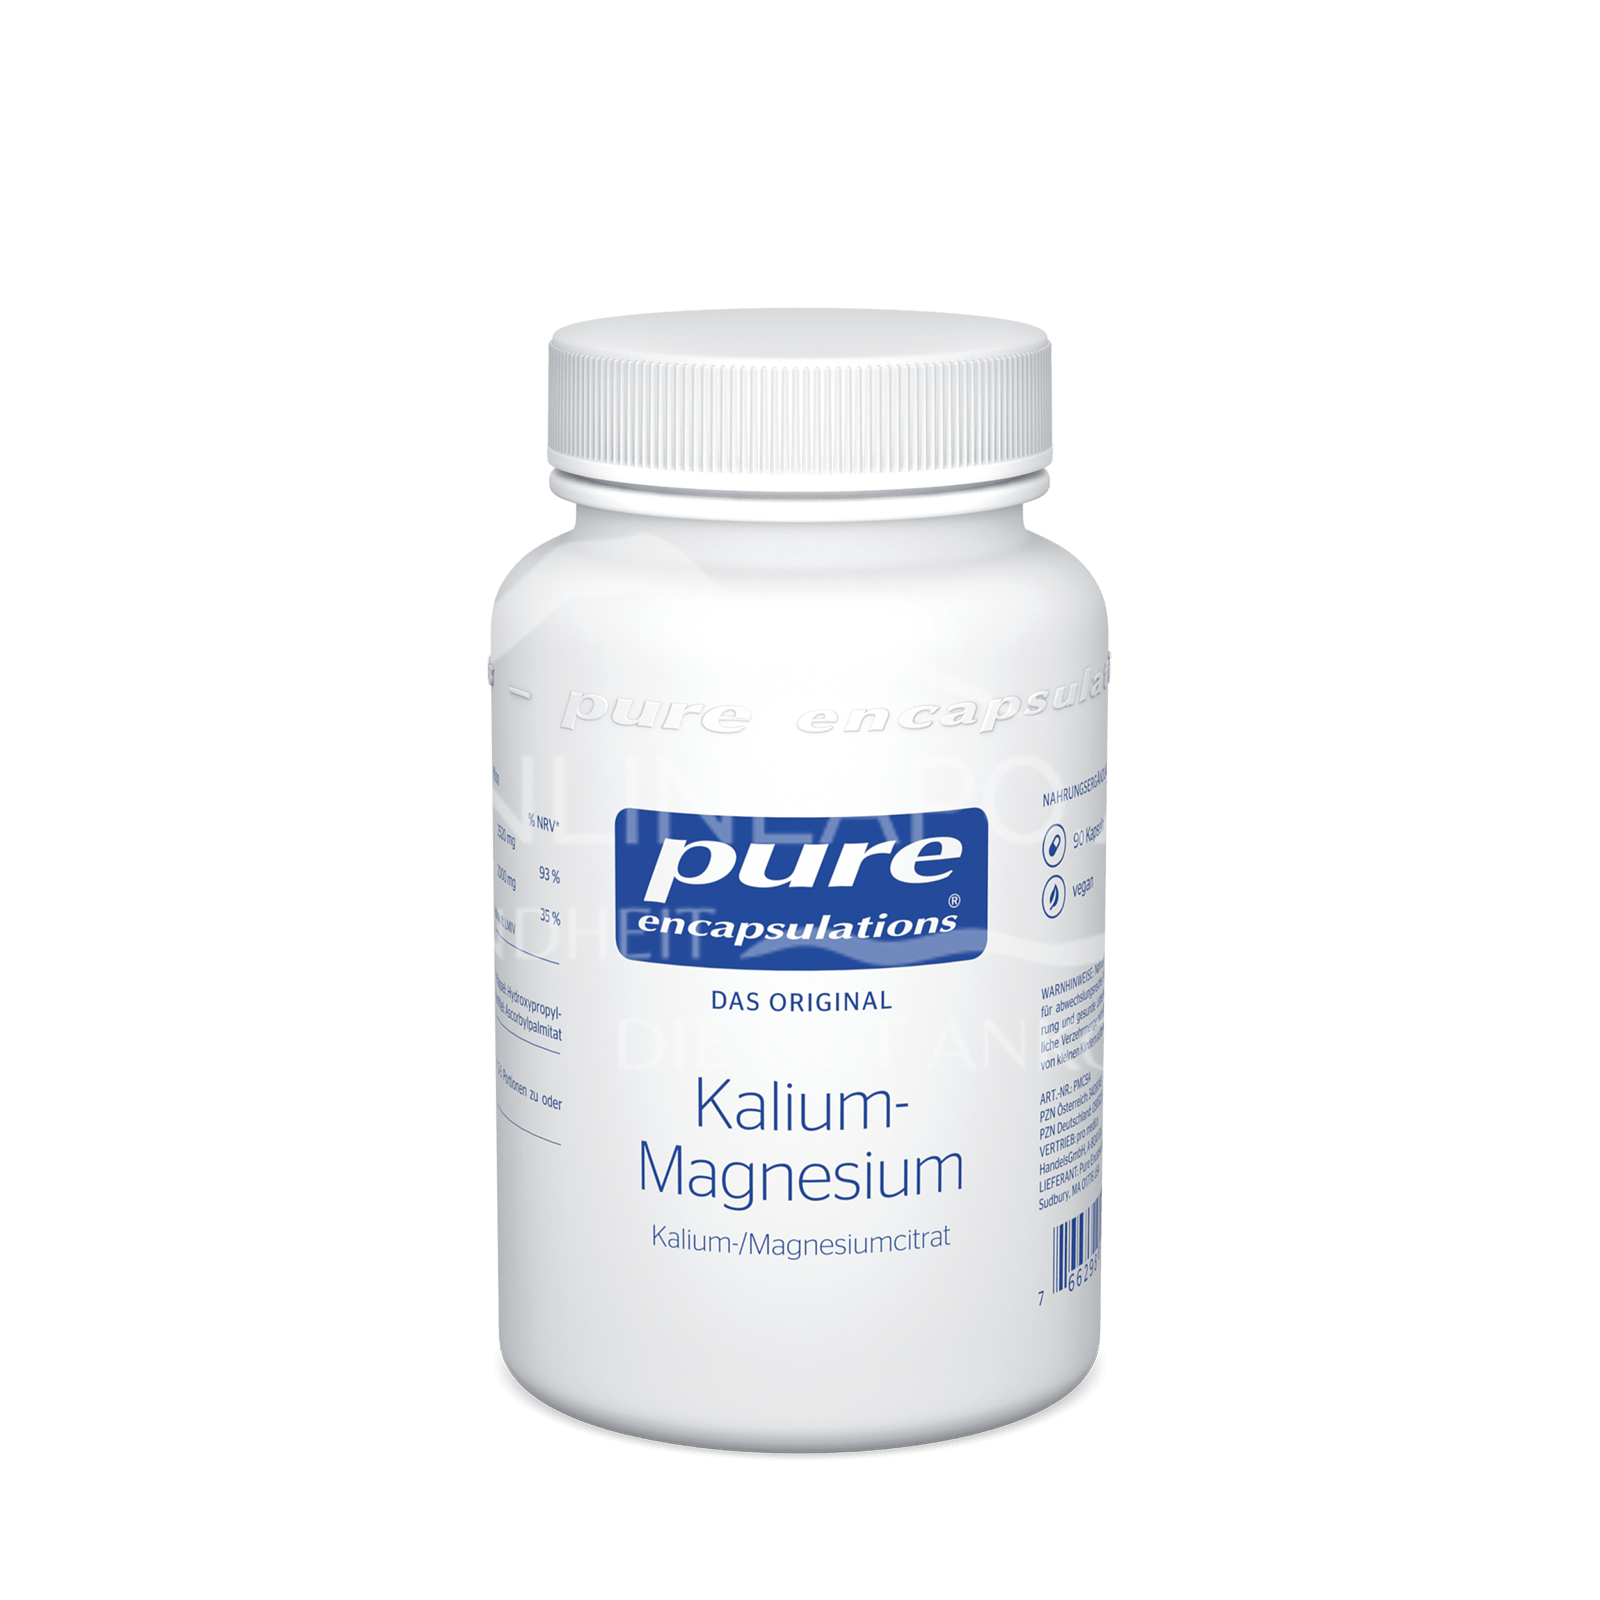 pure encapsulations® Kalium- Magnesium